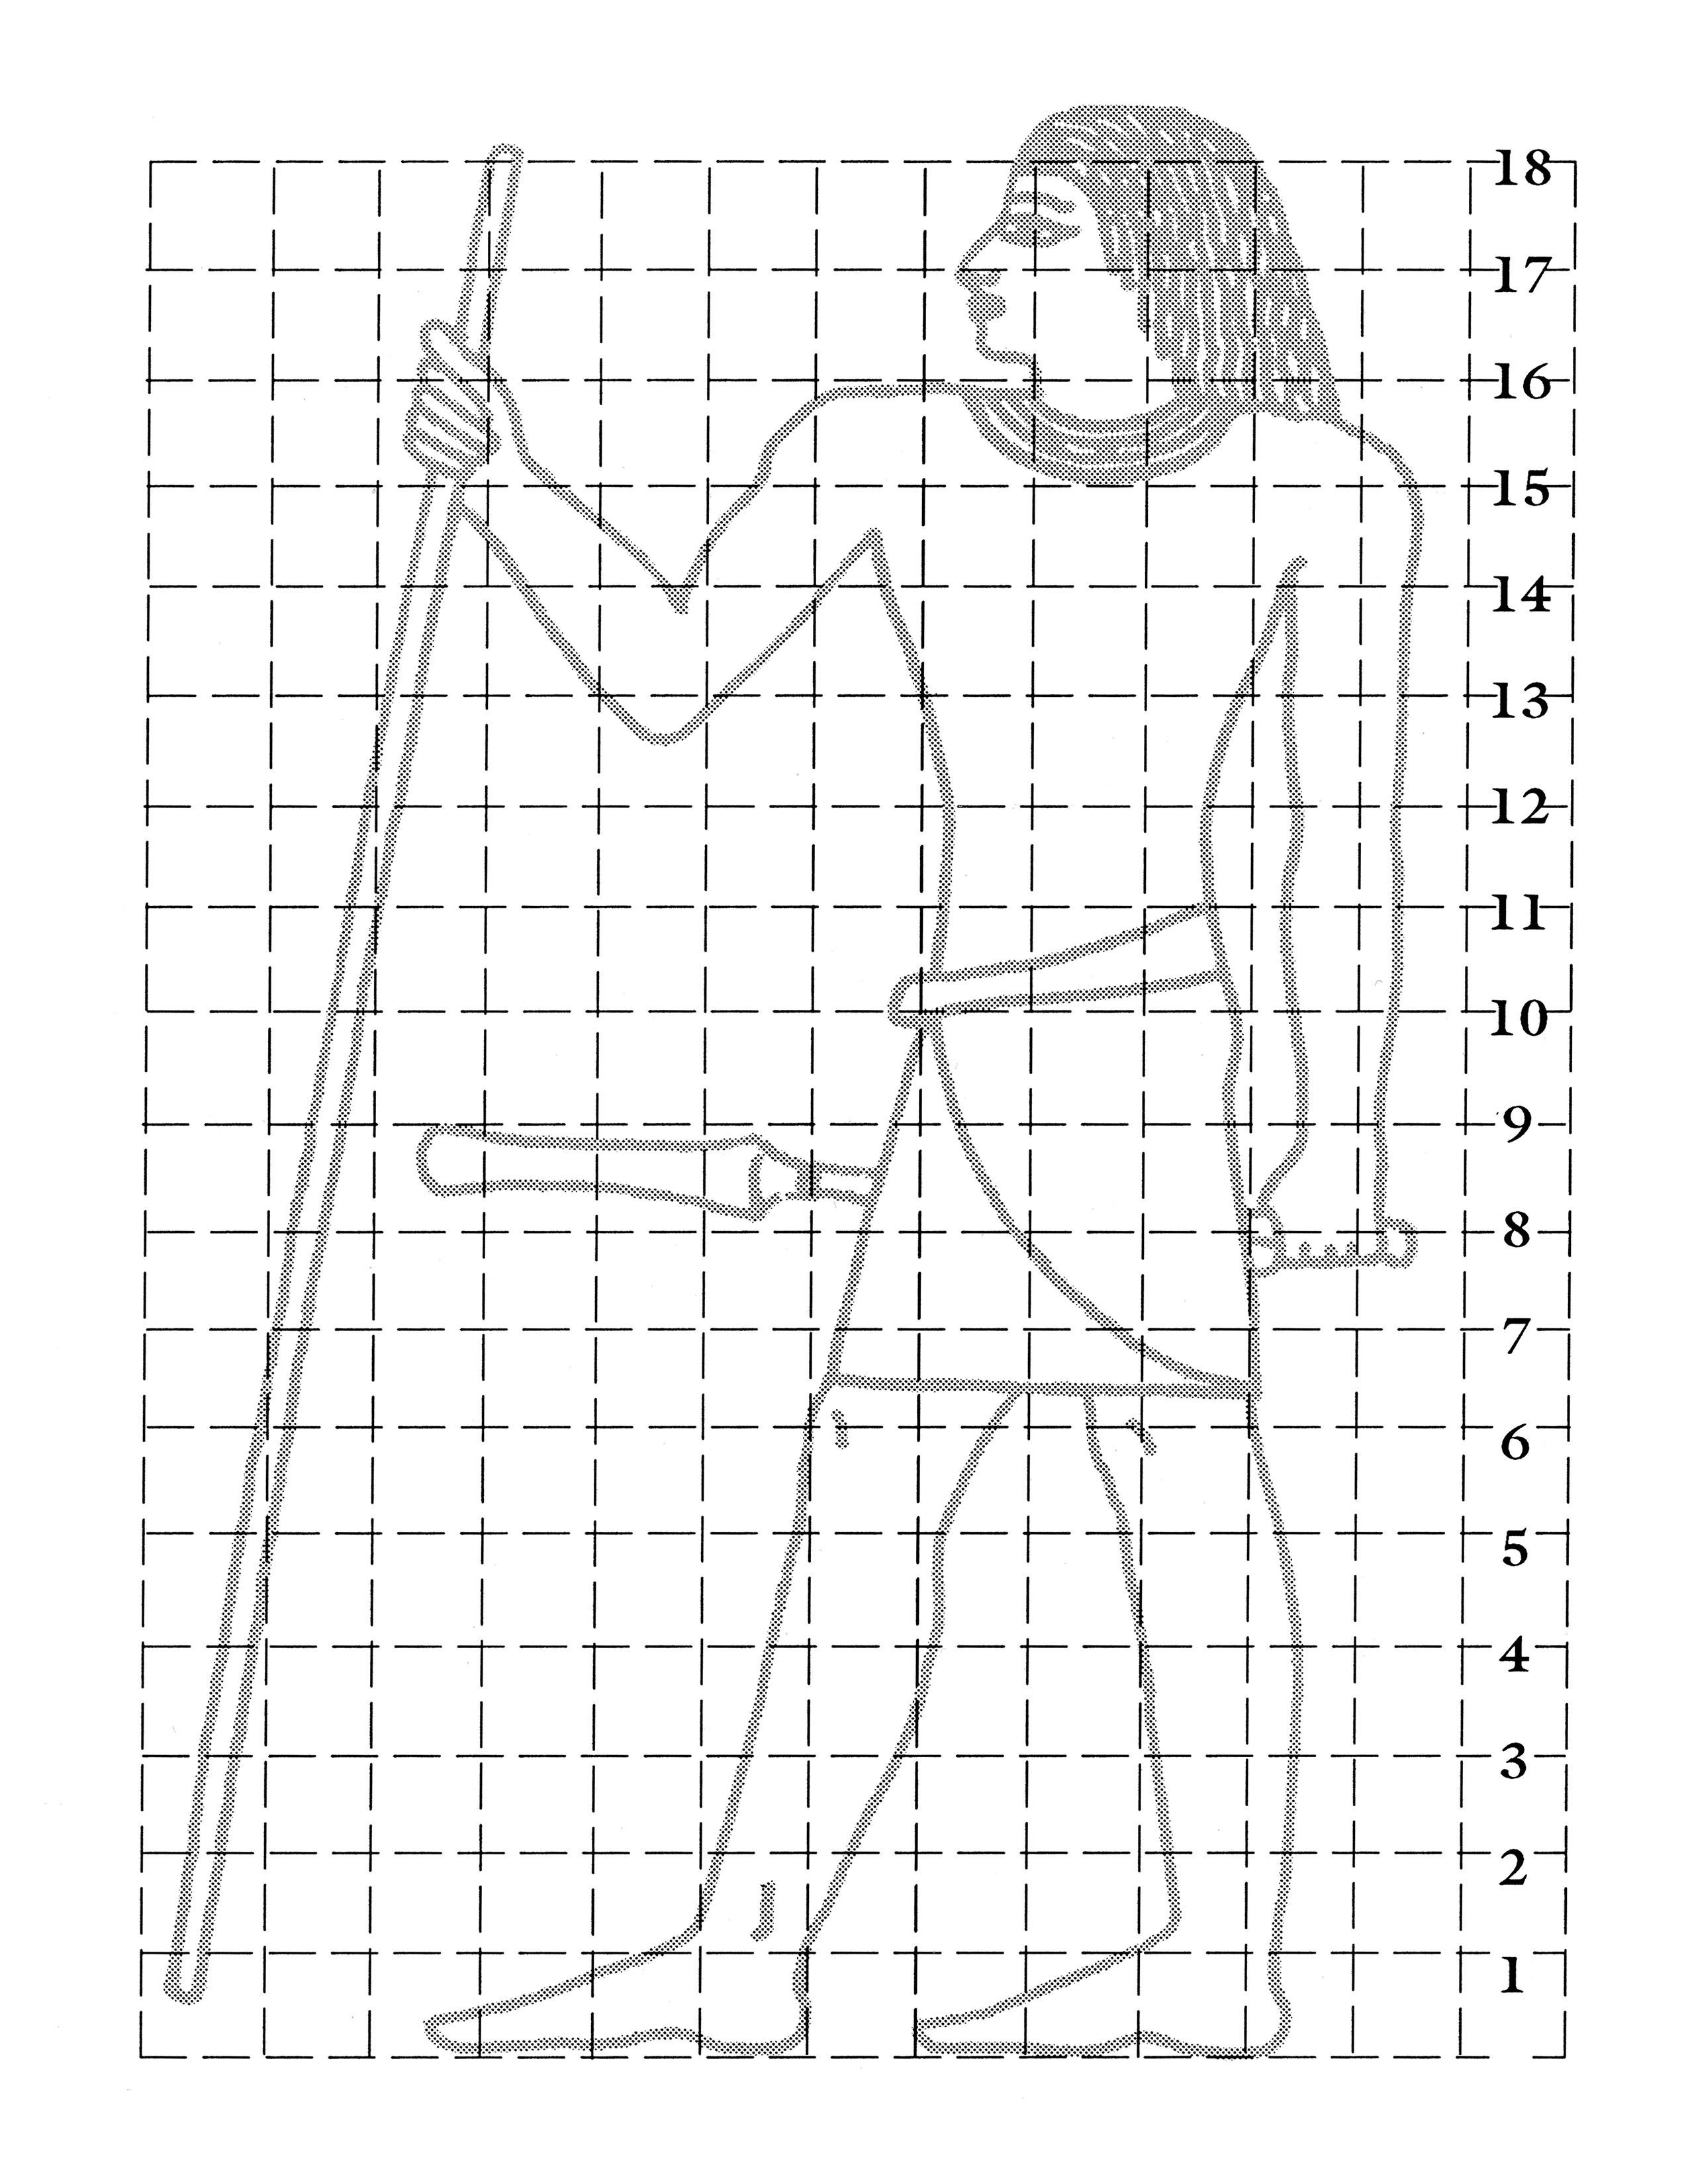 Una figura egipcia en una cuadrilla de 18 líneas.